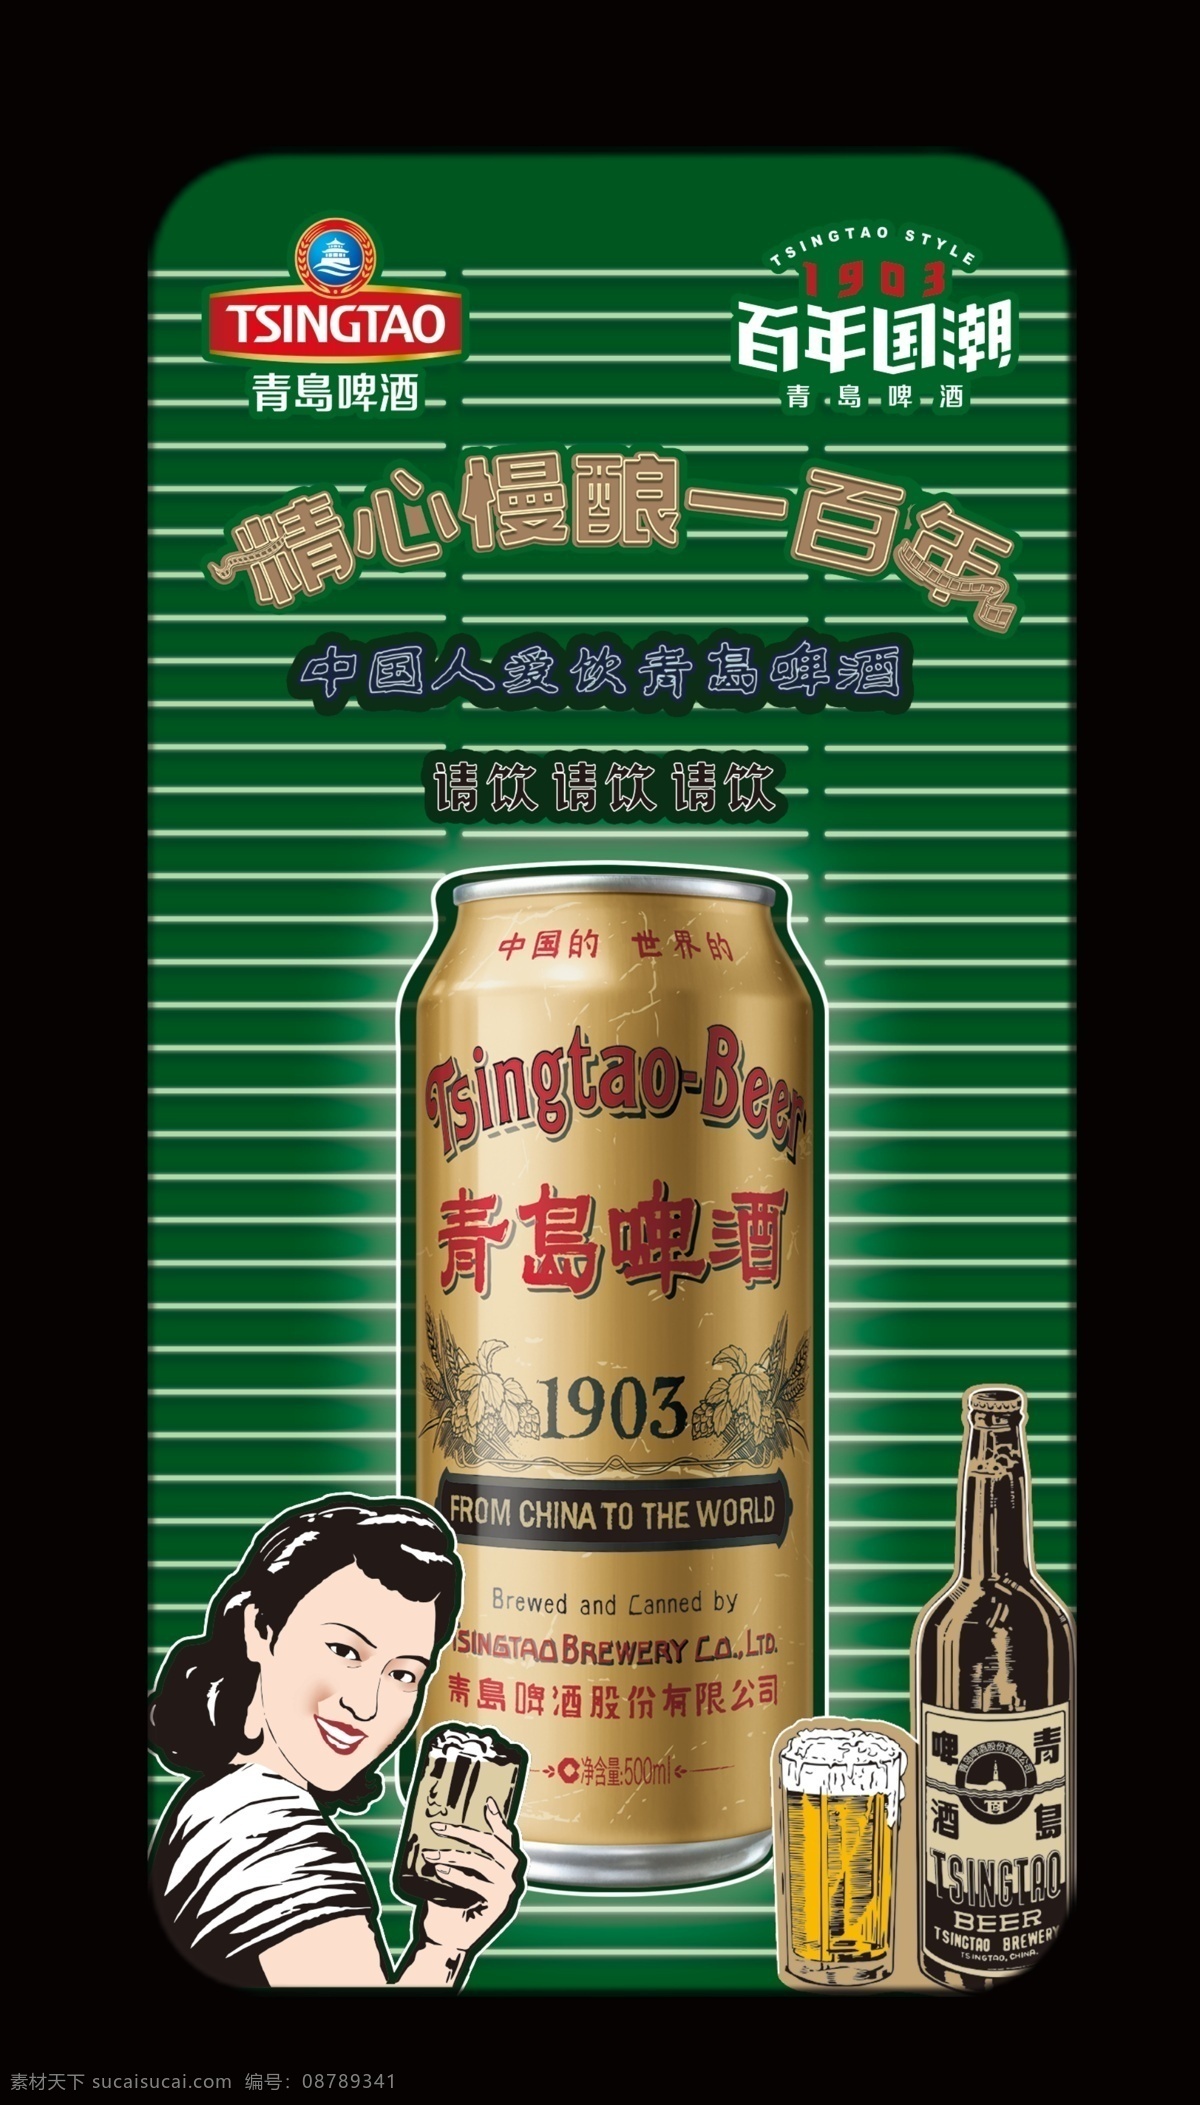 青岛啤酒图片 啤酒 1903 展板 灯箱 青岛 室内广告设计